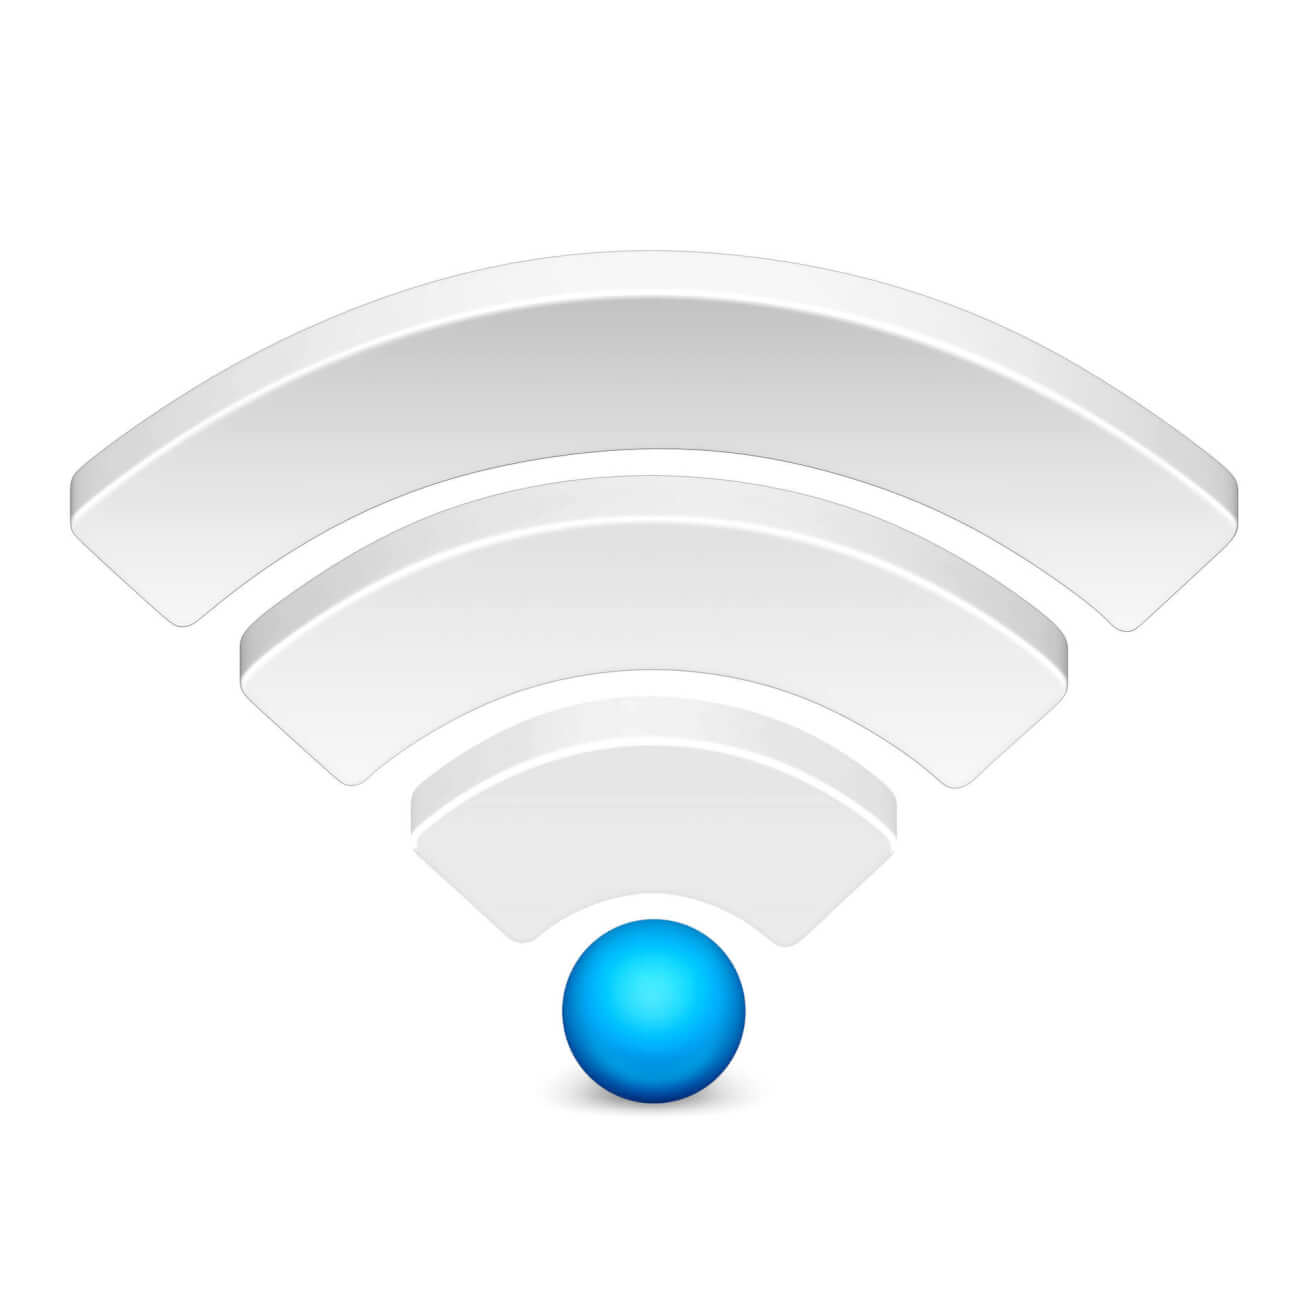 Weak-Wireless-Icon-Shutterstock_82565002